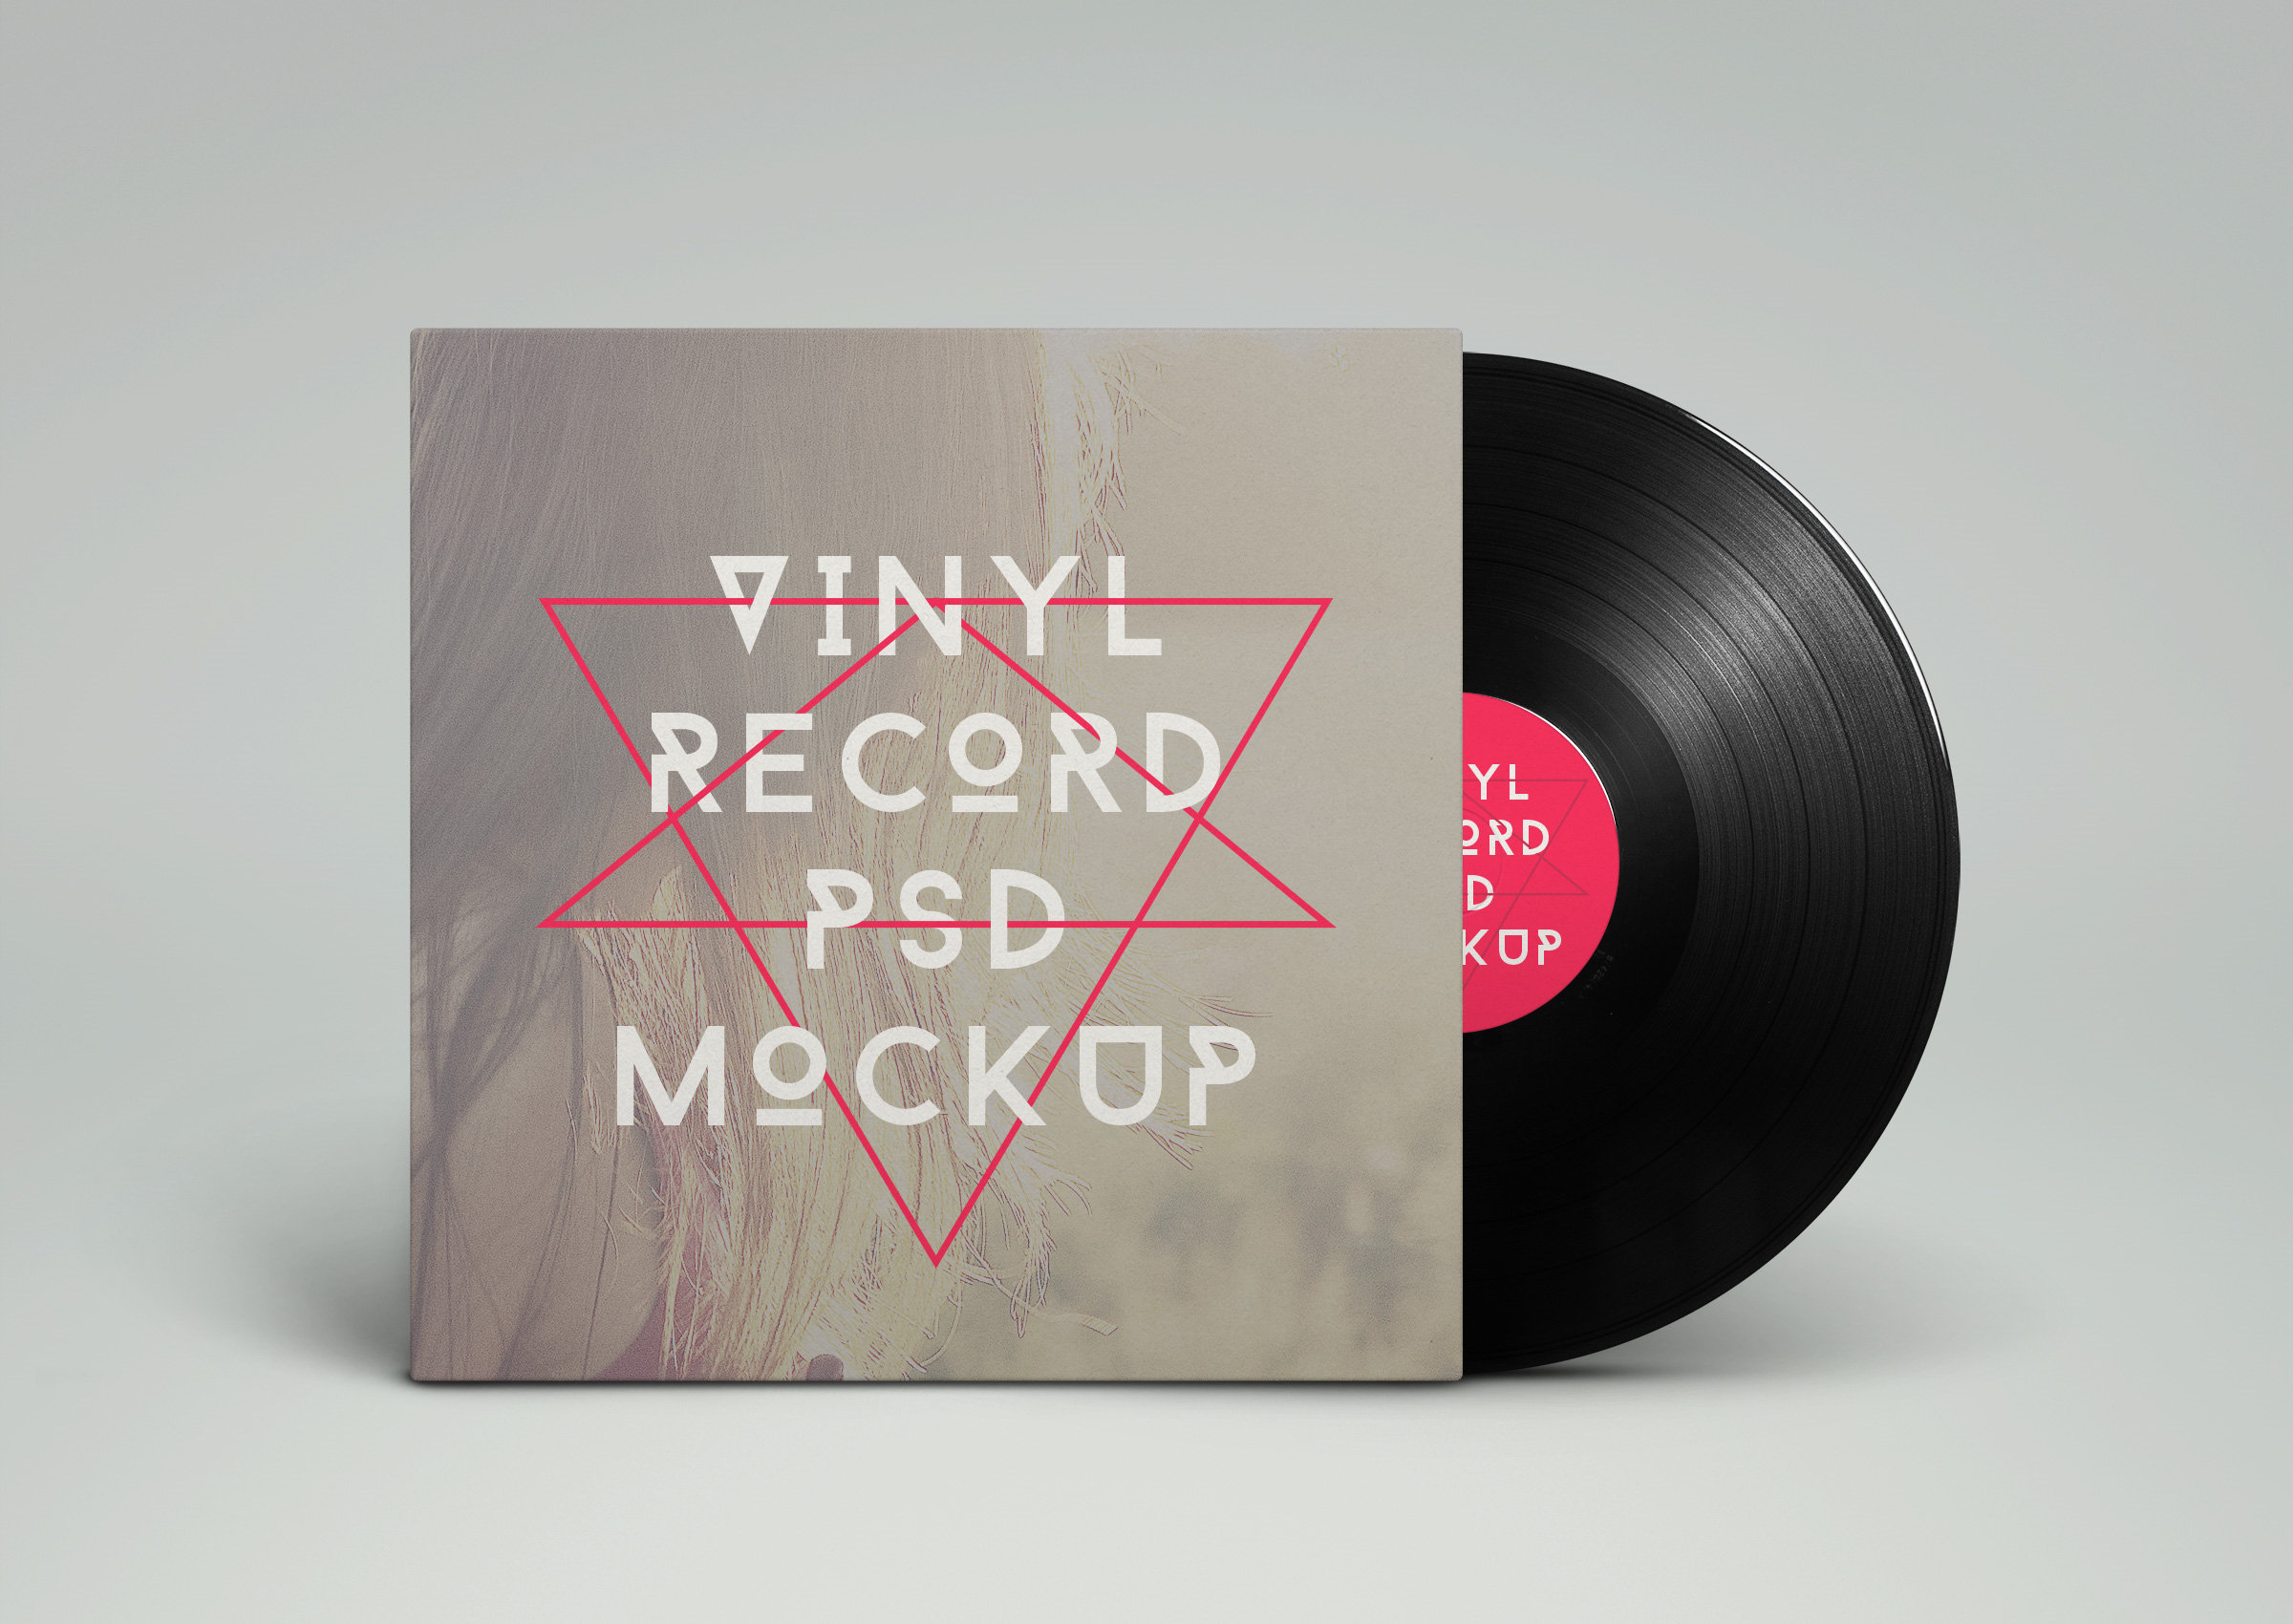 6款高品质唱片CD包装设计展示样机 6 Vinyl Record Mockup插图5